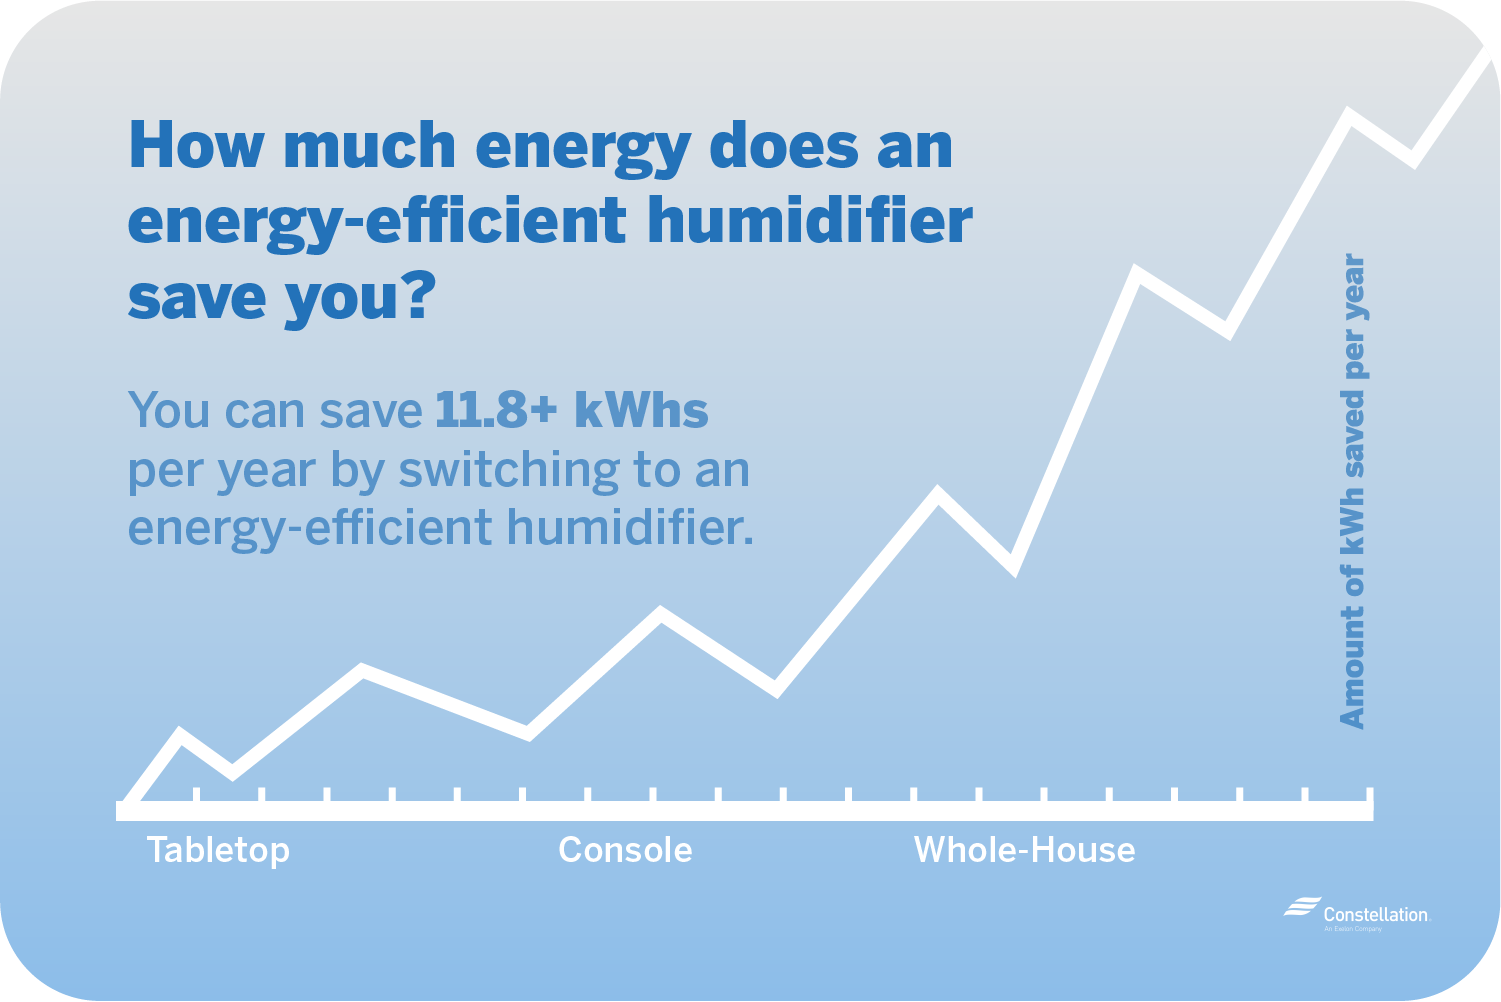 节能加湿器每年节省11.8千瓦时的能源和更多